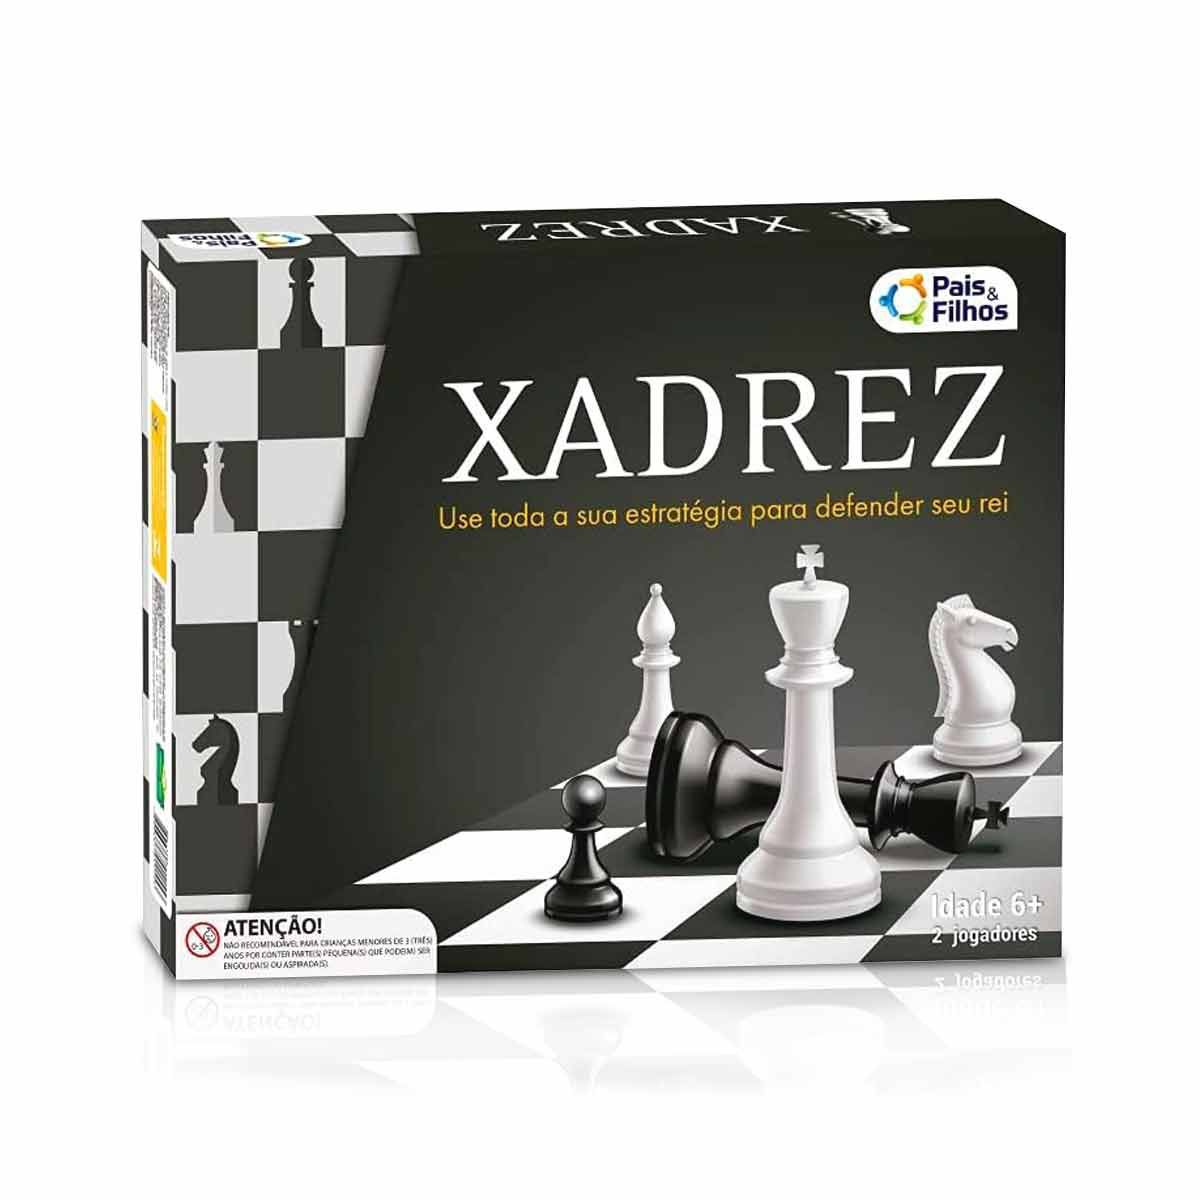 Imagem gratuita: Rei, xadrez, jogo, tabuleiro de xadrez, estratégia